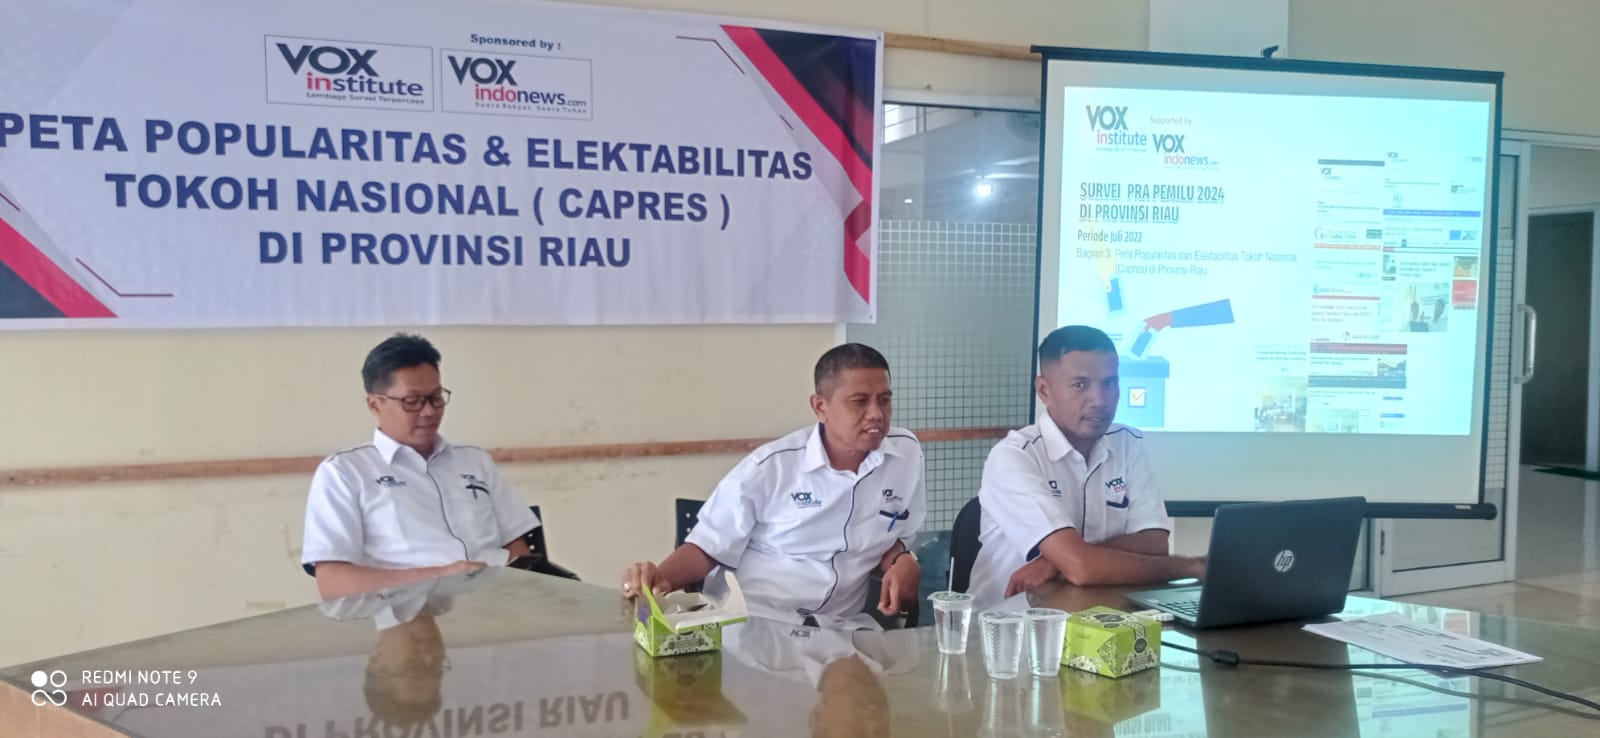 Survei Capres VOXinstitute di Provinsi Riau : Anies, Prabowo dan Ganjar Bersaing Ketat